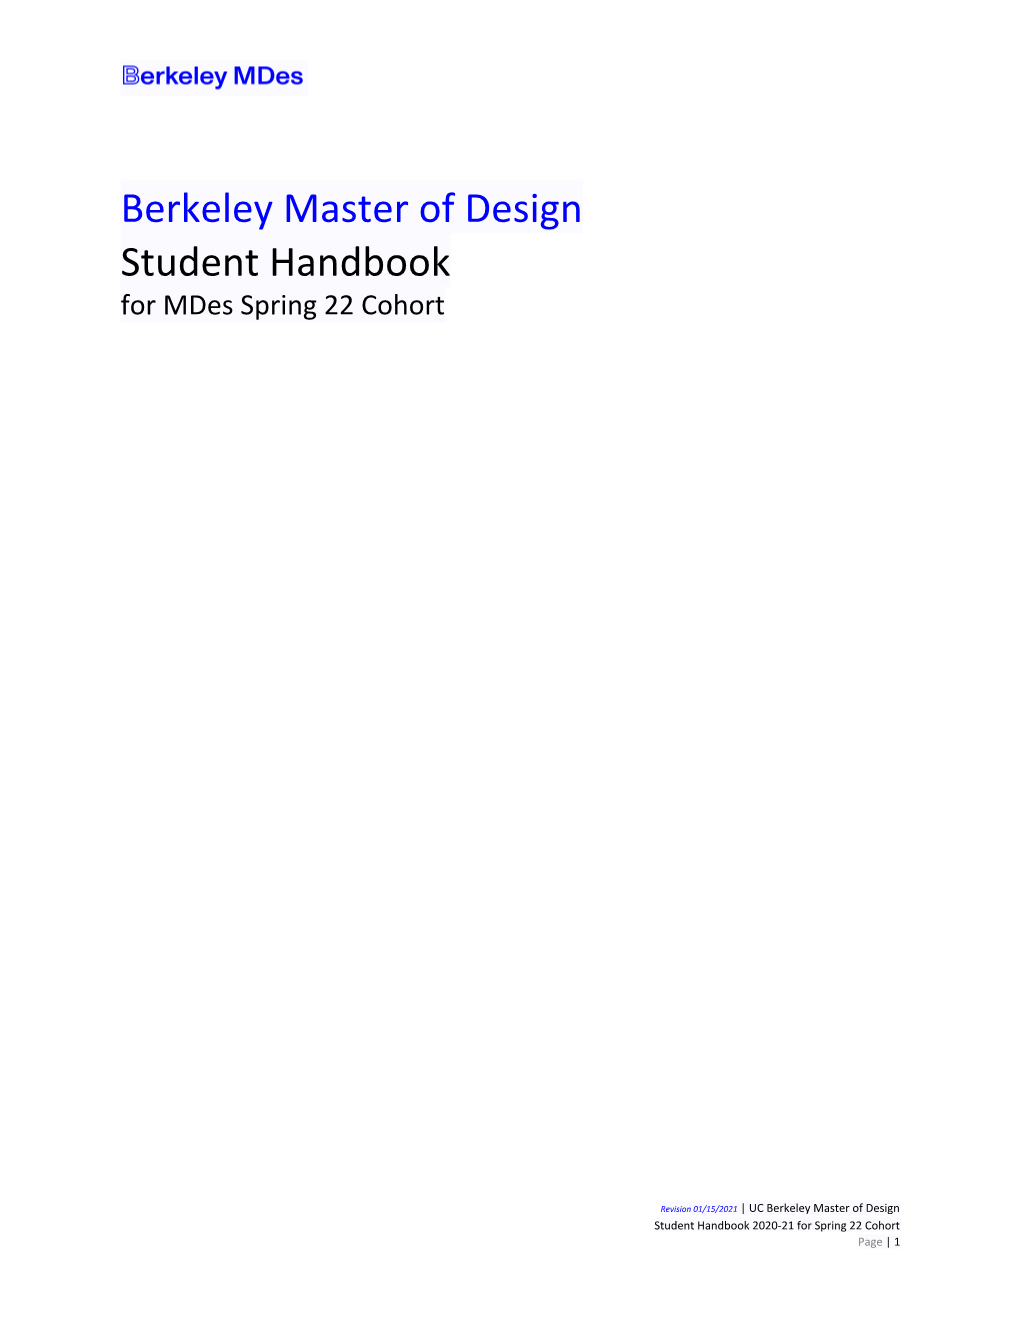 Berkeley Master of Design Student Handbook for Mdes Spring 22 Cohort